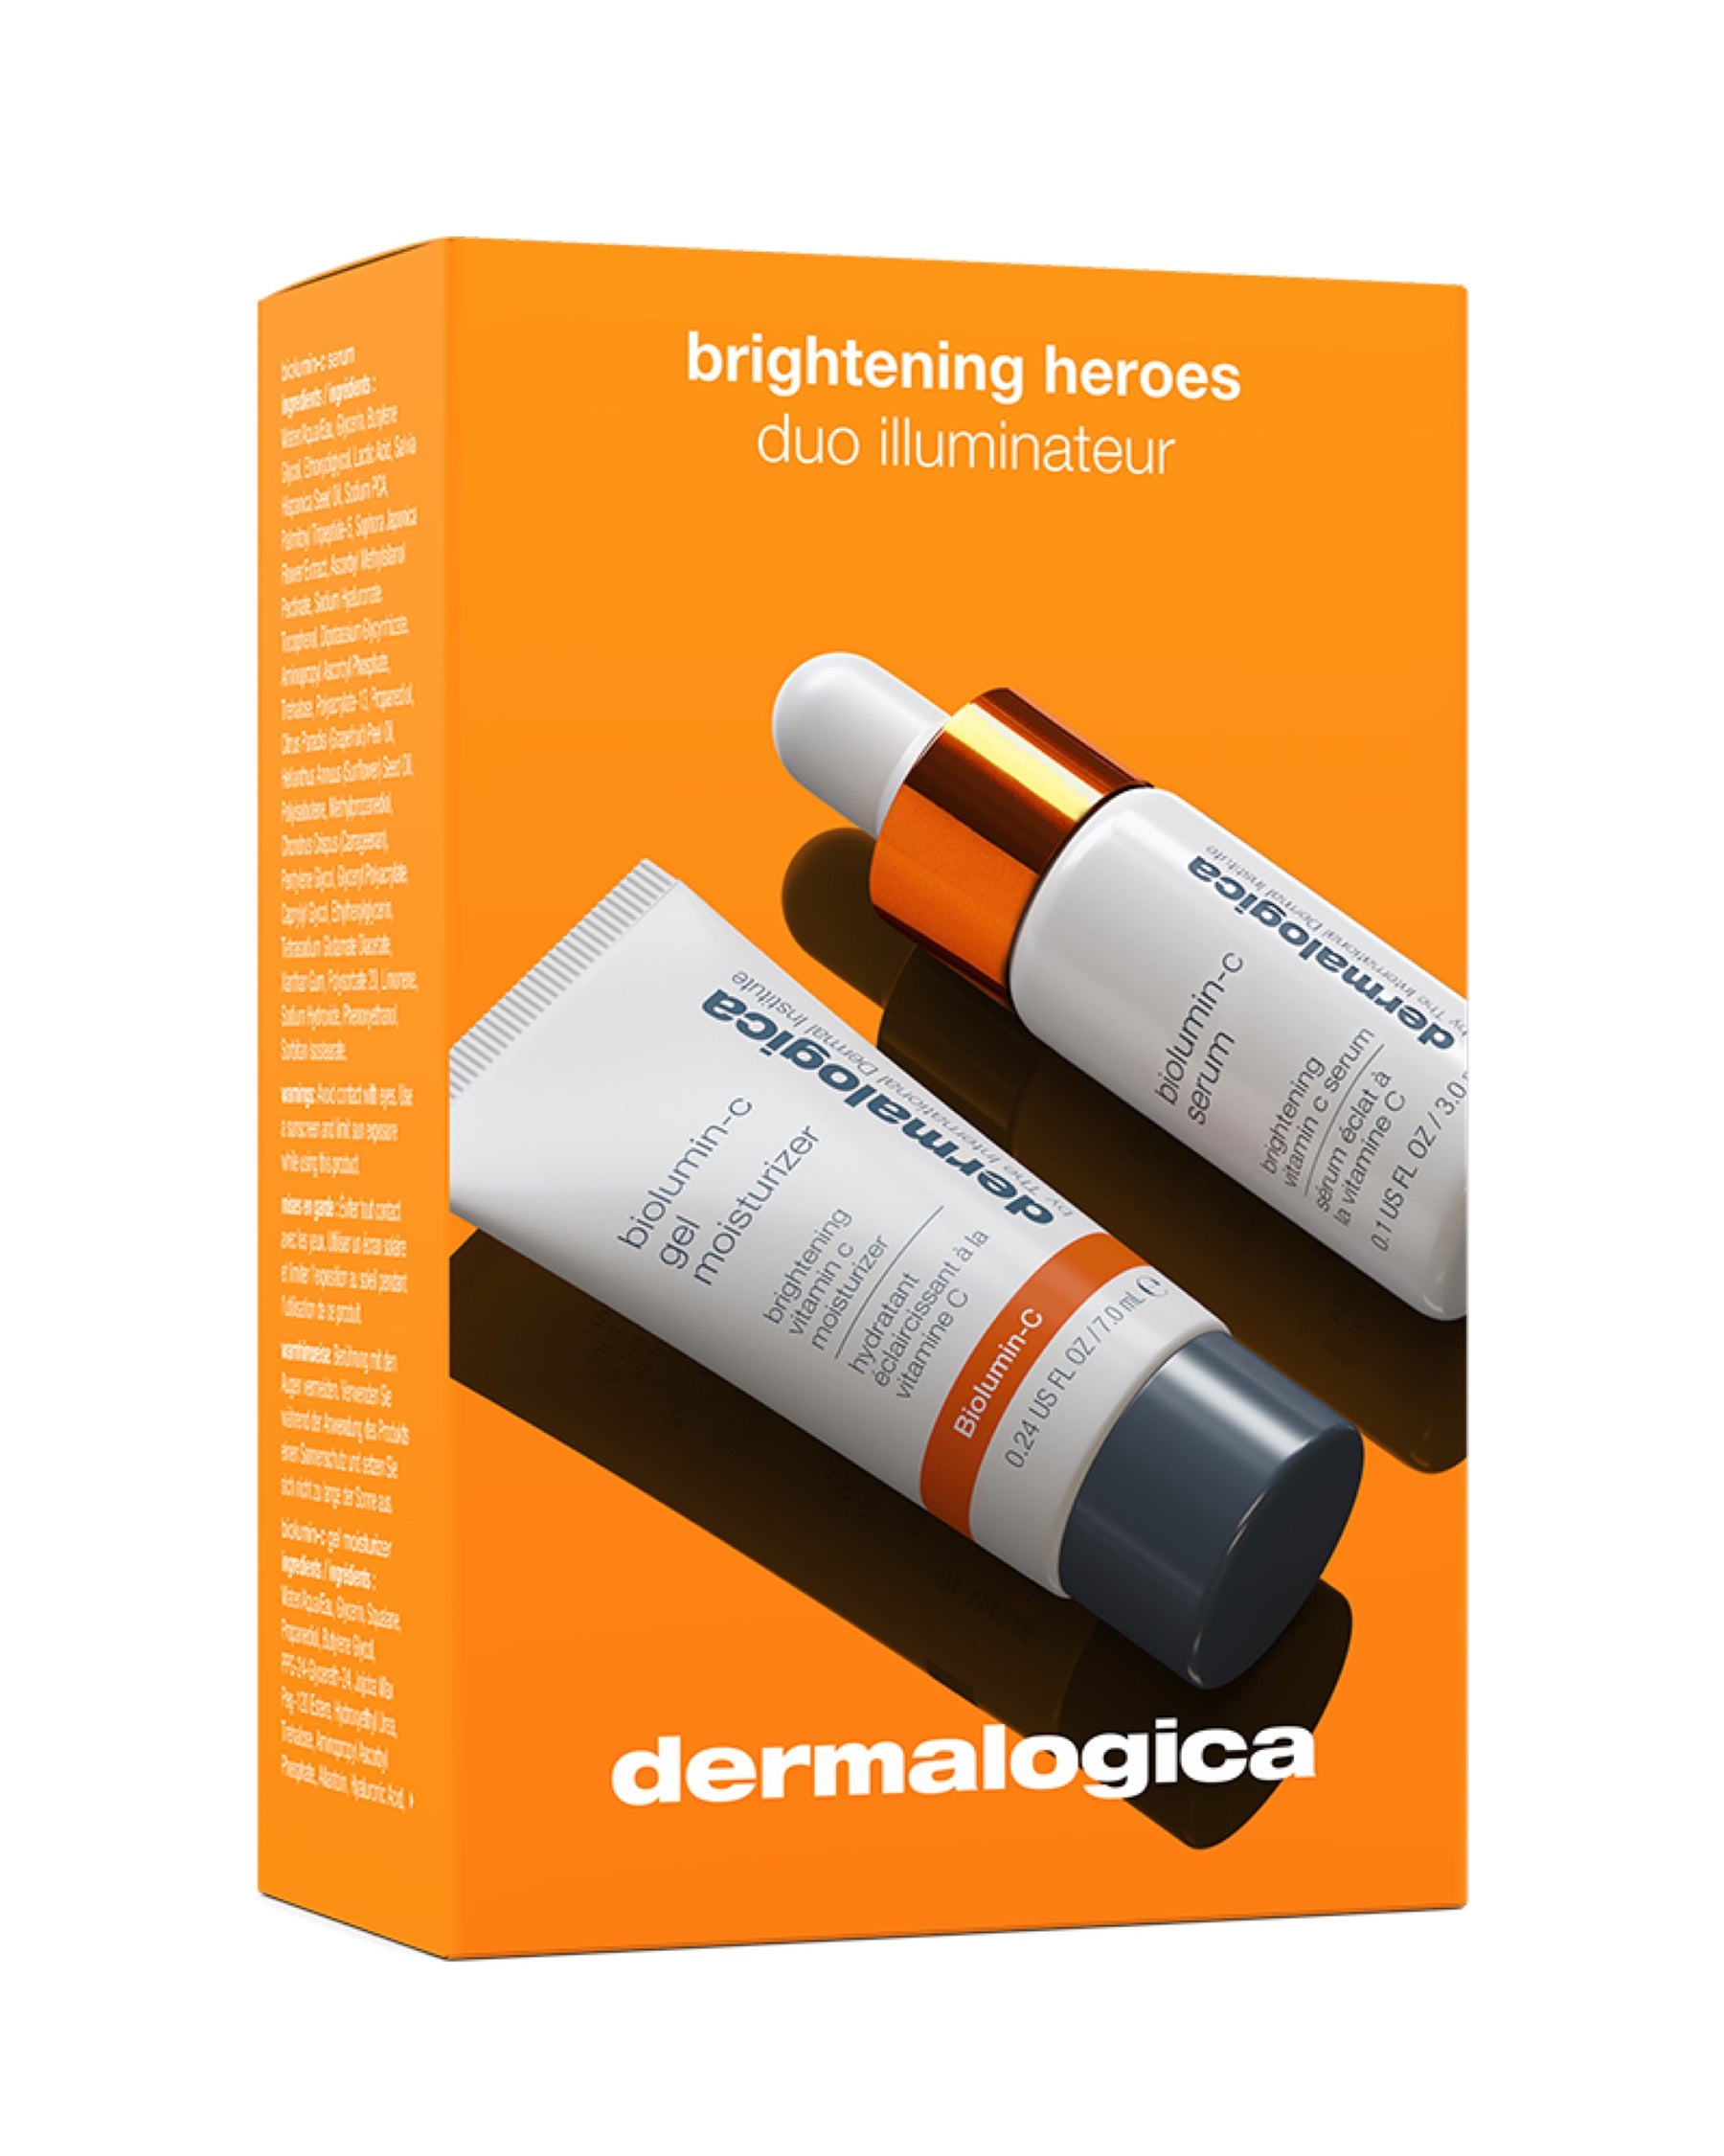 Dermalogica brightening heroes kit